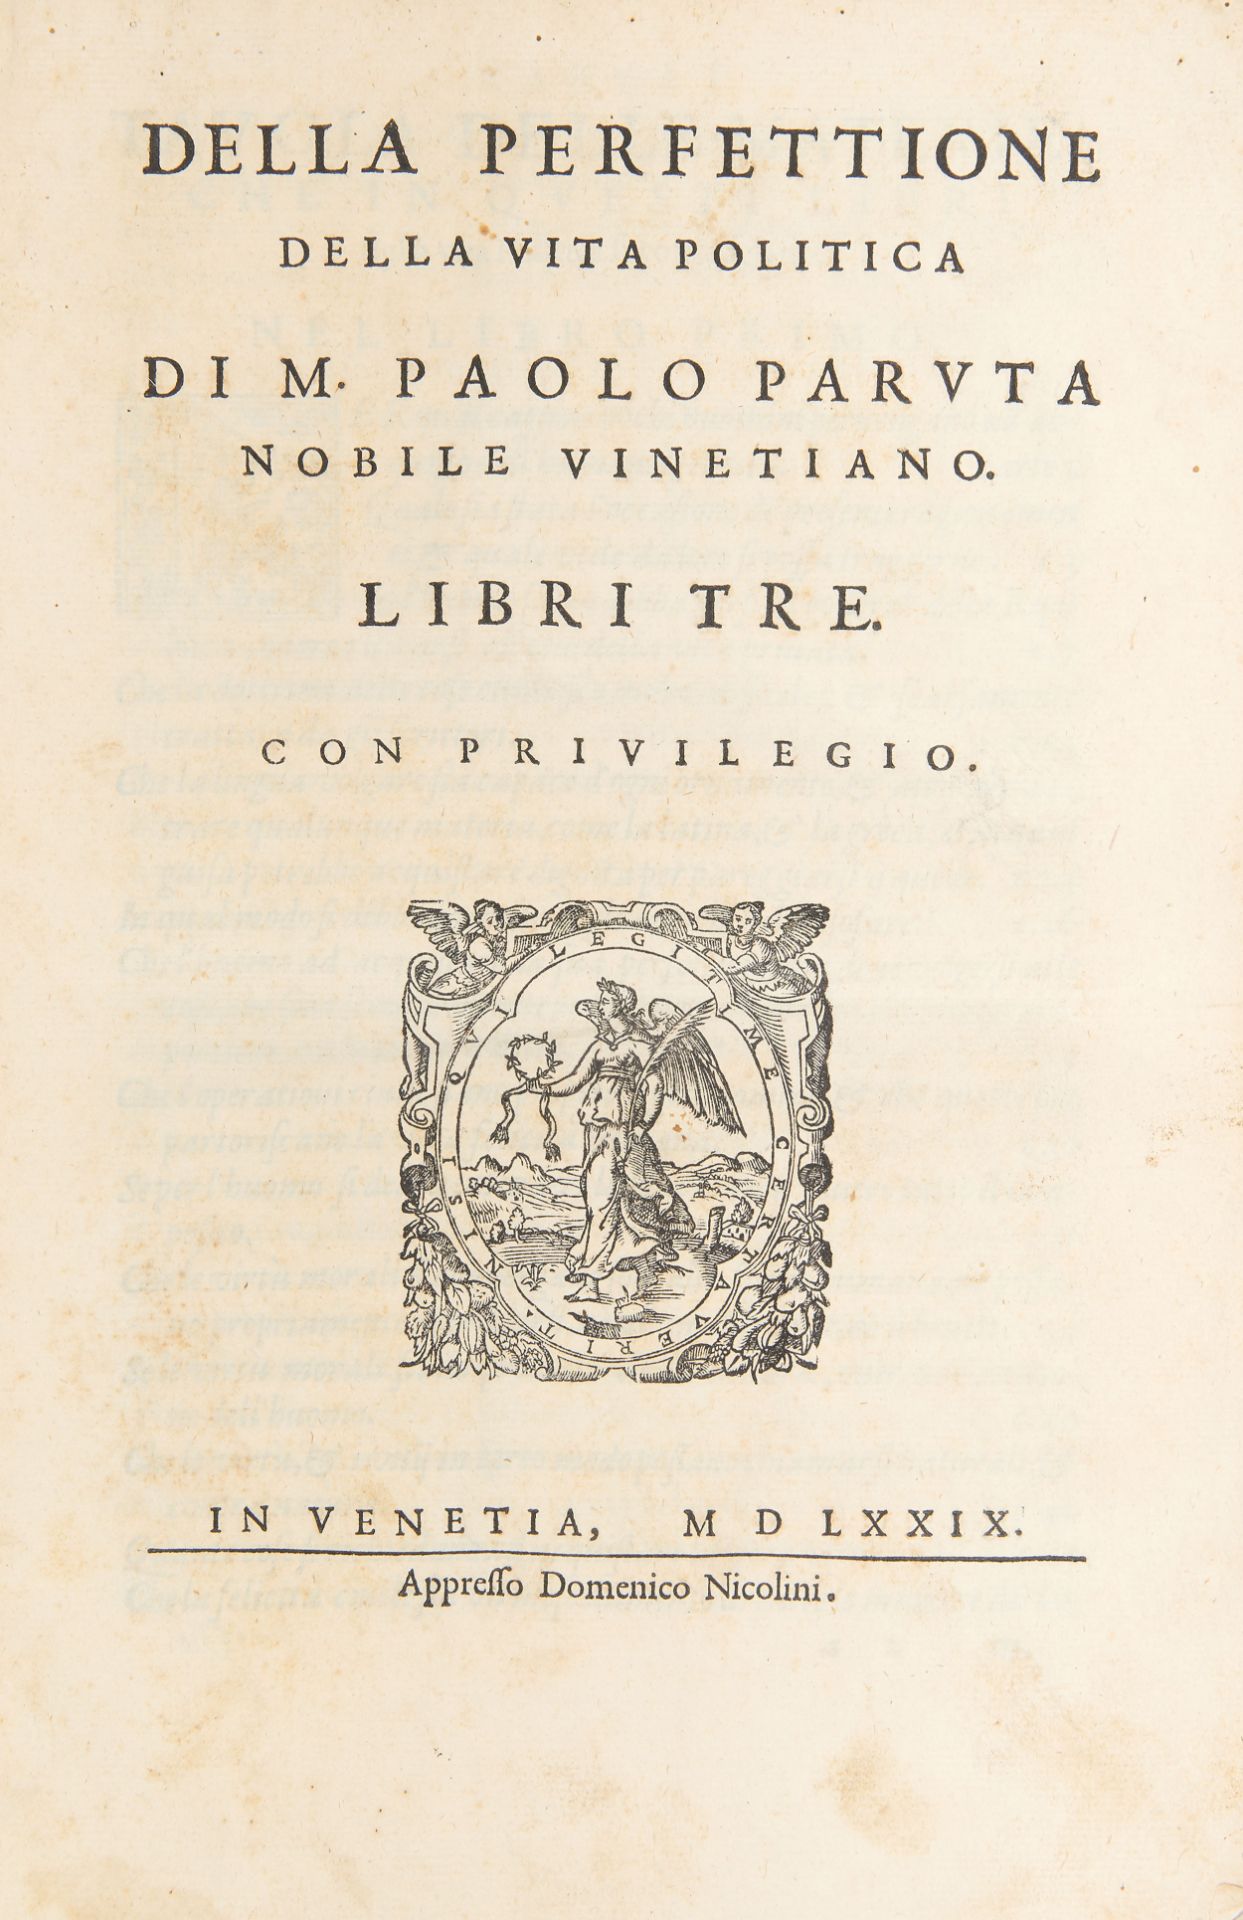 PARUTA, Paolo (1540-1598). Della perfettione della vita politica. Venice: Nicolini, 1579.